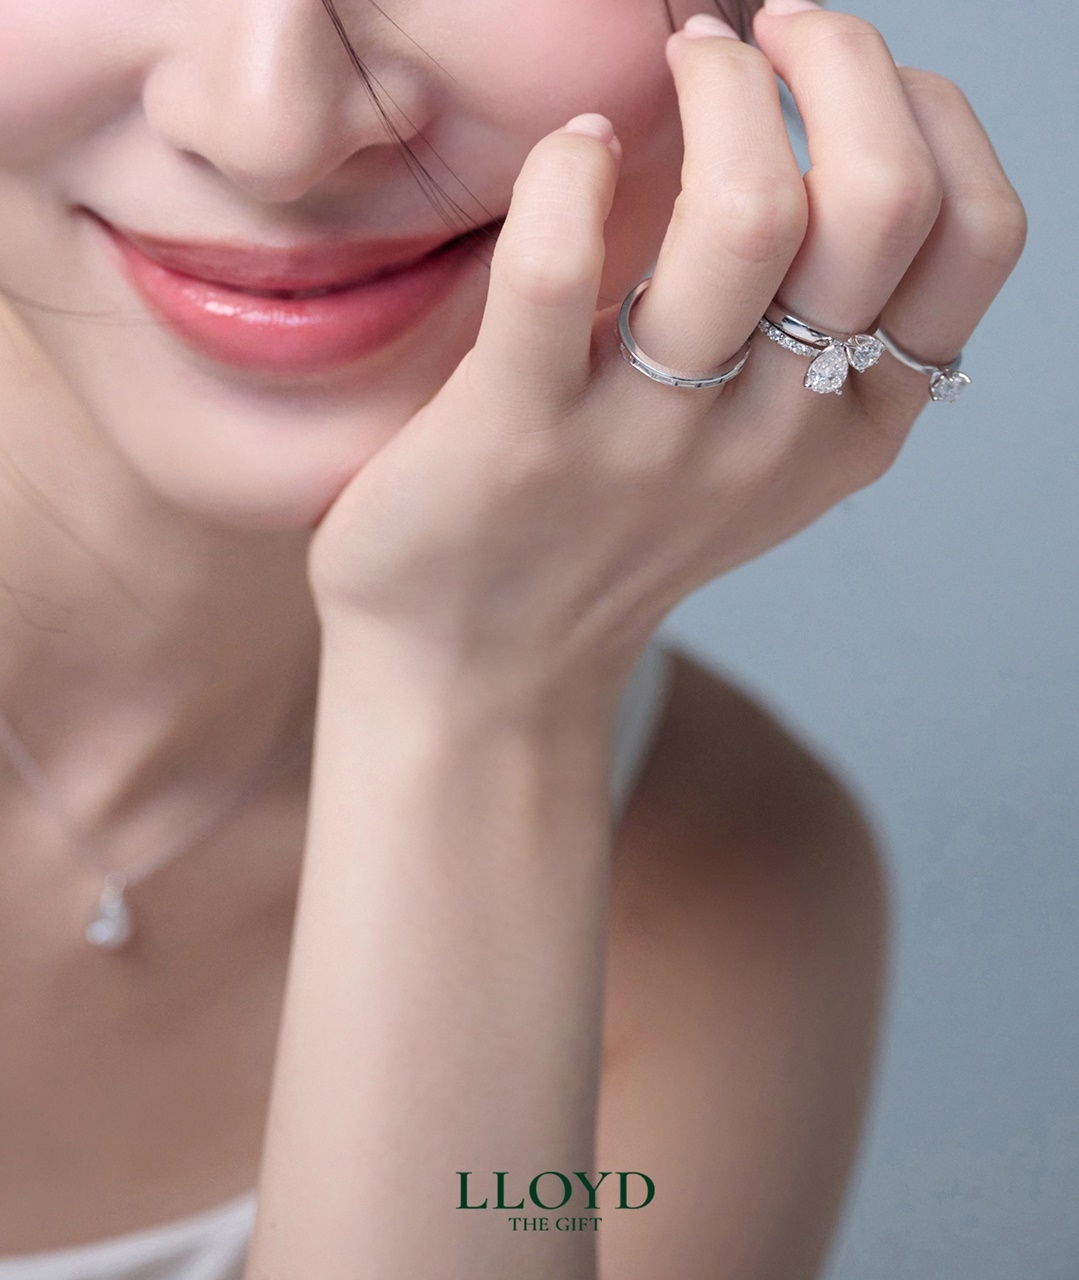 [생활경제 이슈] 이랜드 로이드, 5부 랩그로운 다이아몬드 출시 外